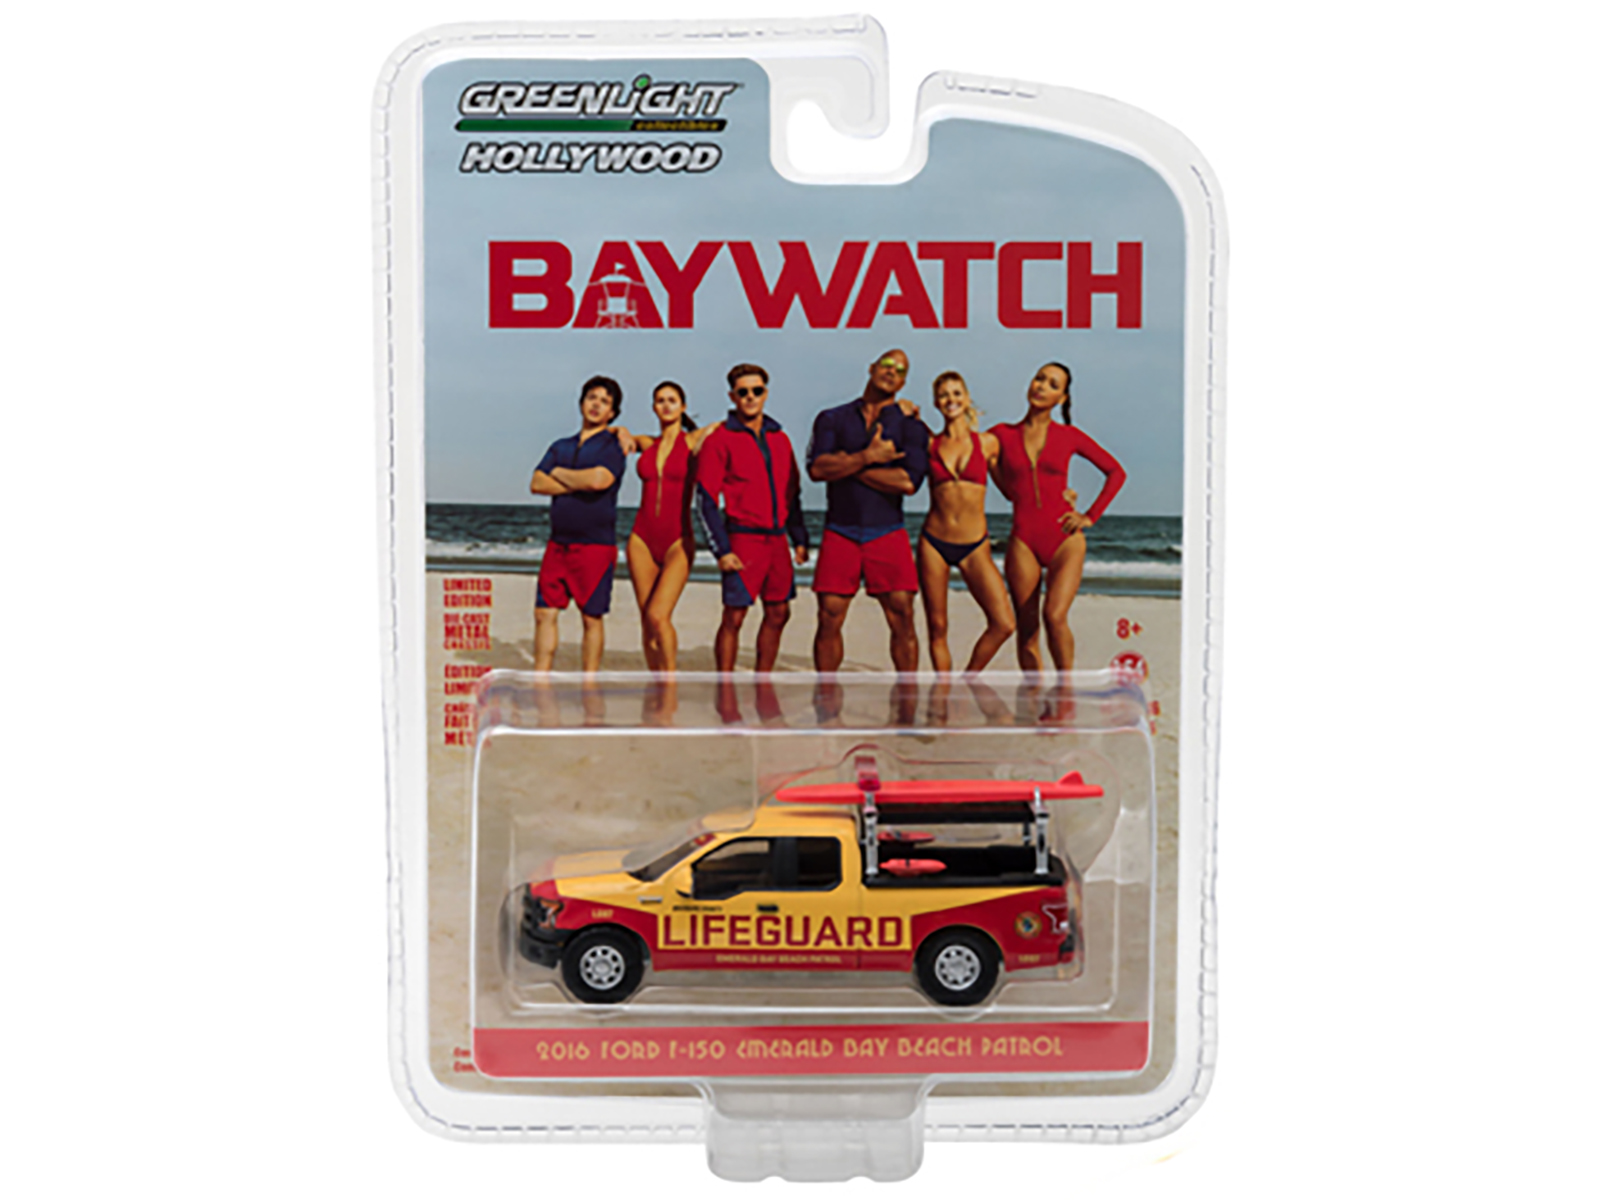 Ford F-150 Emerald Bay Beach Patrol 2016 "Baywatch" 1-64 Geel/Rood Greenlight Hollywood Series